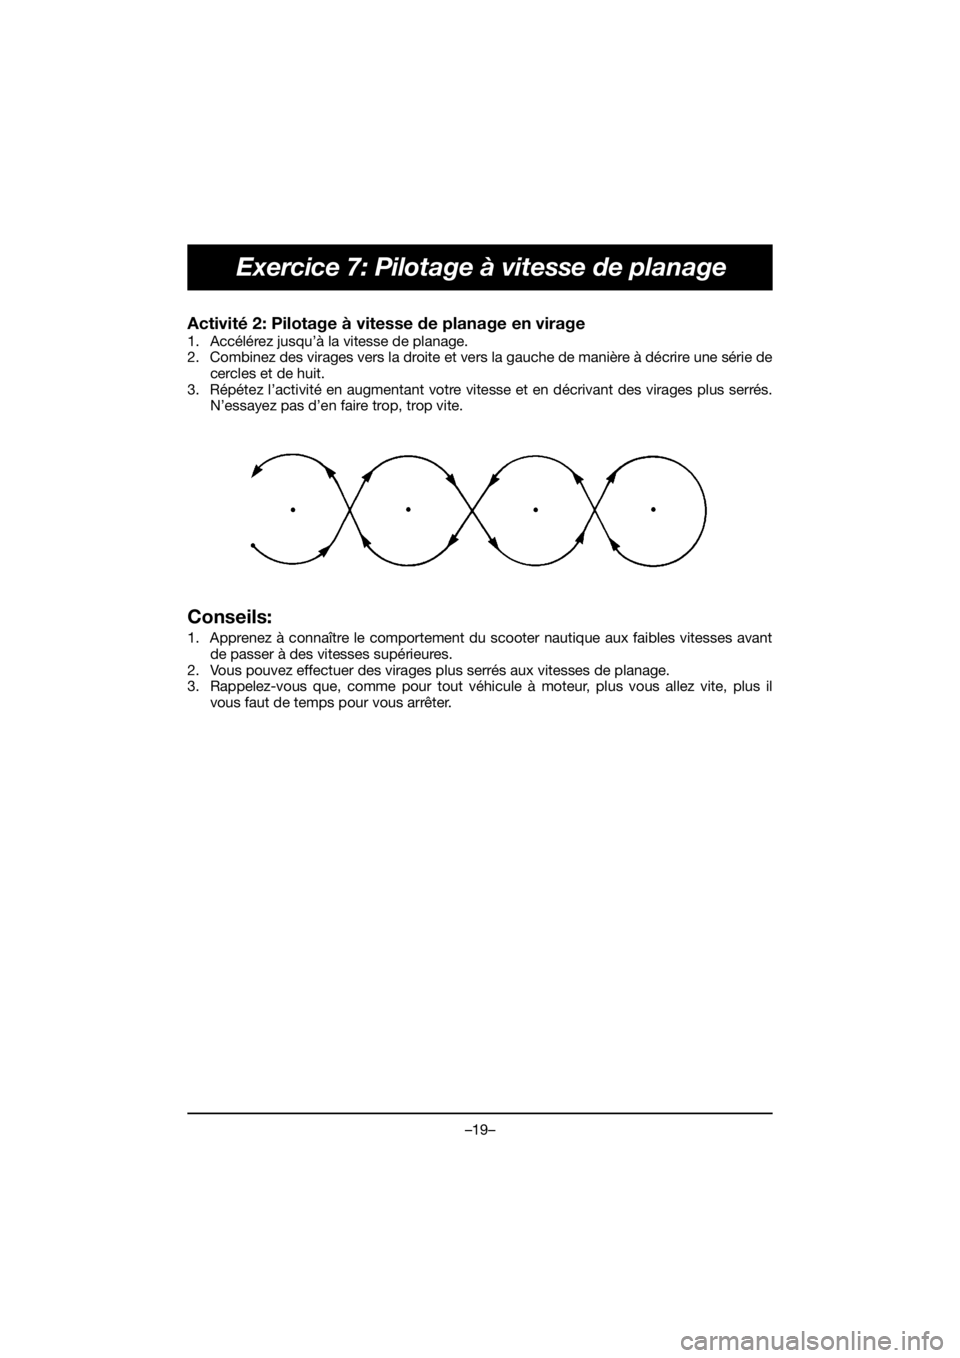 YAMAHA EX SPORT 2020  Notices Demploi (in French) –19–
Exercice 7: Pilotage à vitesse de planage
Activité 2: Pilotage à vitesse de planage en virage 
1. Accélérez jusqu’à la vitesse de planage. 
2. Combinez des virages vers la droite et v